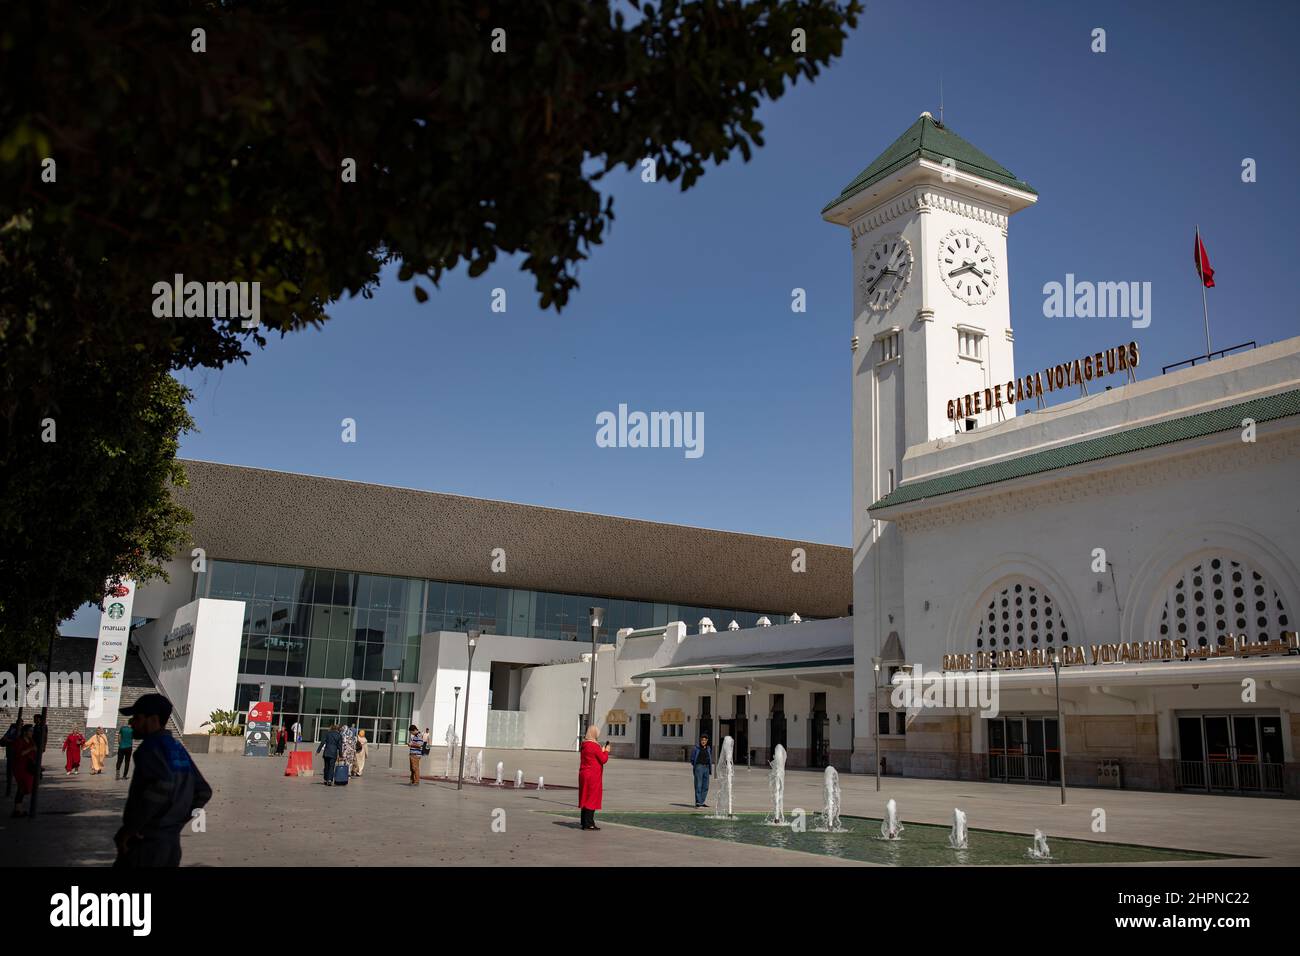 L'antica stazione coloniale francese della stazione ferroviaria Casa Voyageurs si trova ancora accanto alla nuova stazione contemporanea di Casablanca, in Marocco. Foto Stock